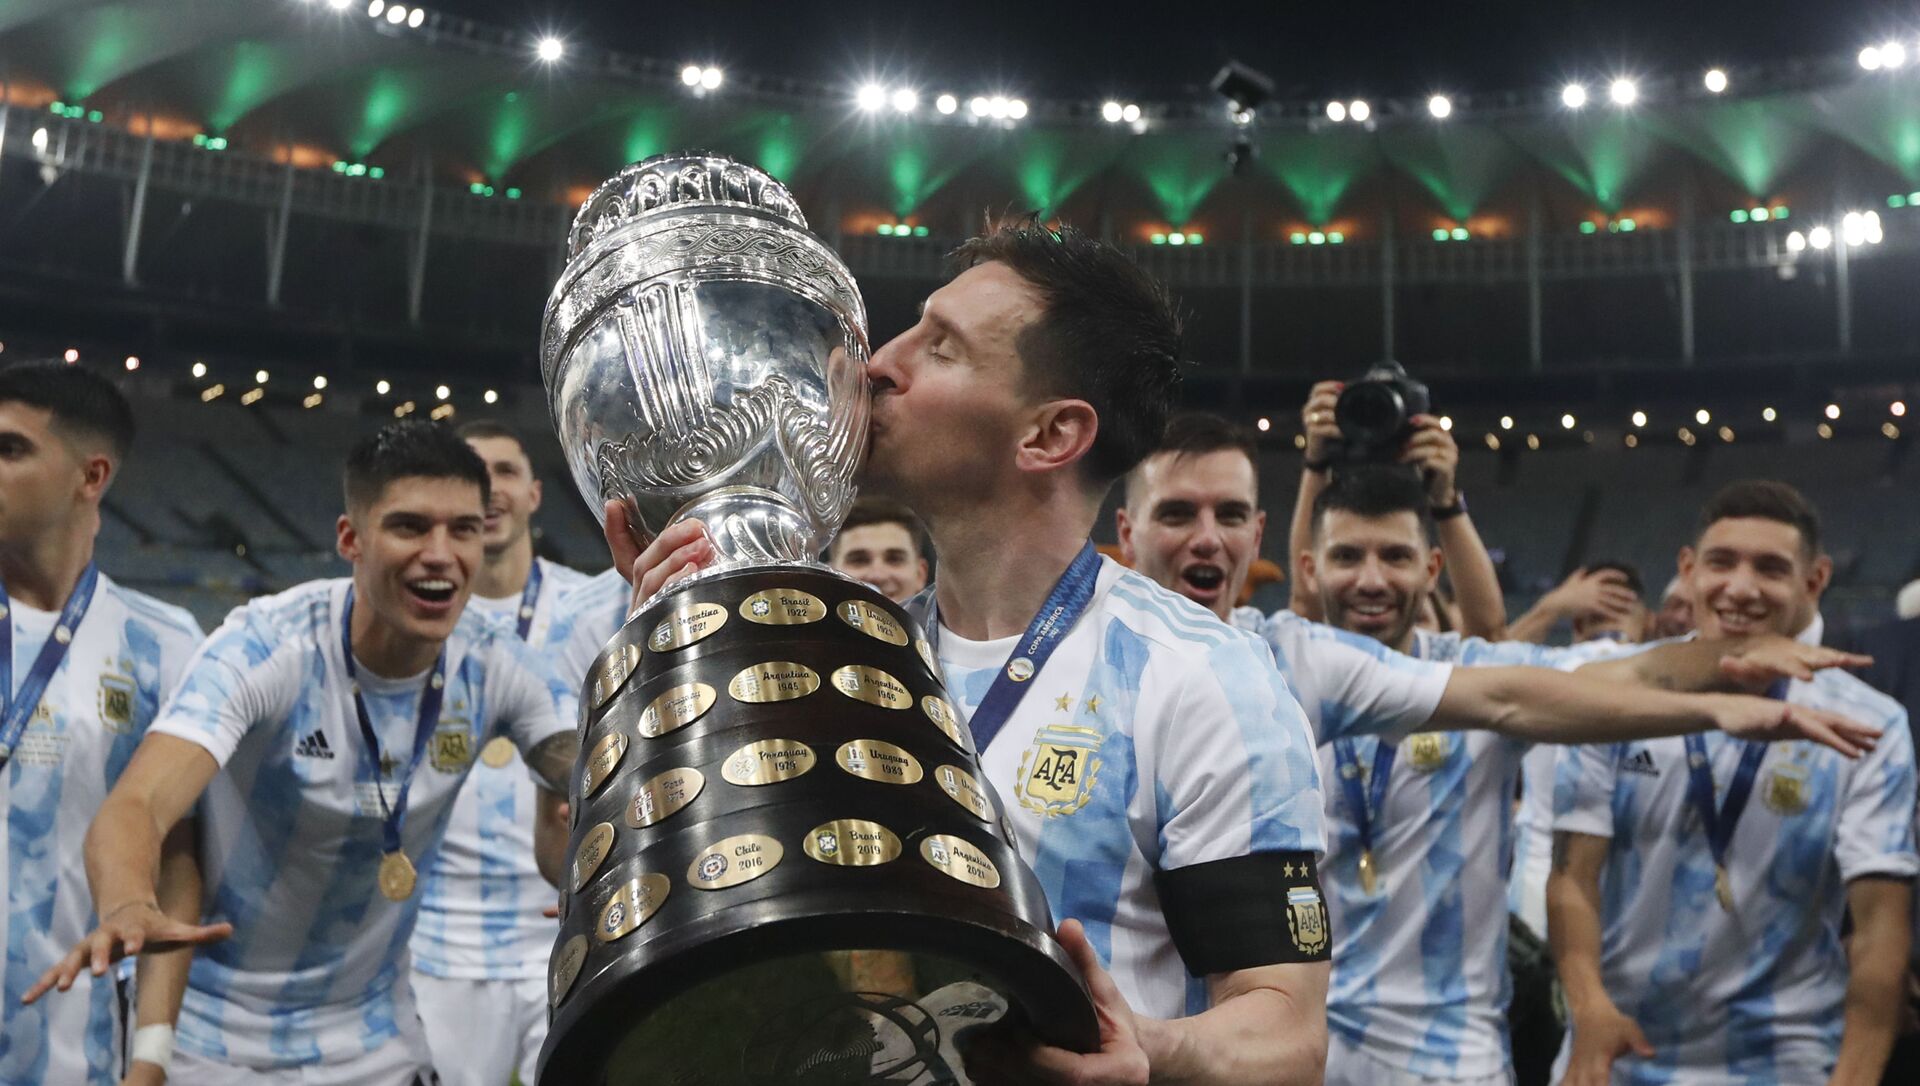 Лионель Месси из Аргентины целует трофей после победы над Бразилией 1: 0 в финальном футбольном матче Кубка Америки на стадионе Маракана в Рио-де-Жанейро, Бразилия, в субботу, 10 июля 2021 г - Sputnik Абхазия, 1920, 11.07.2021